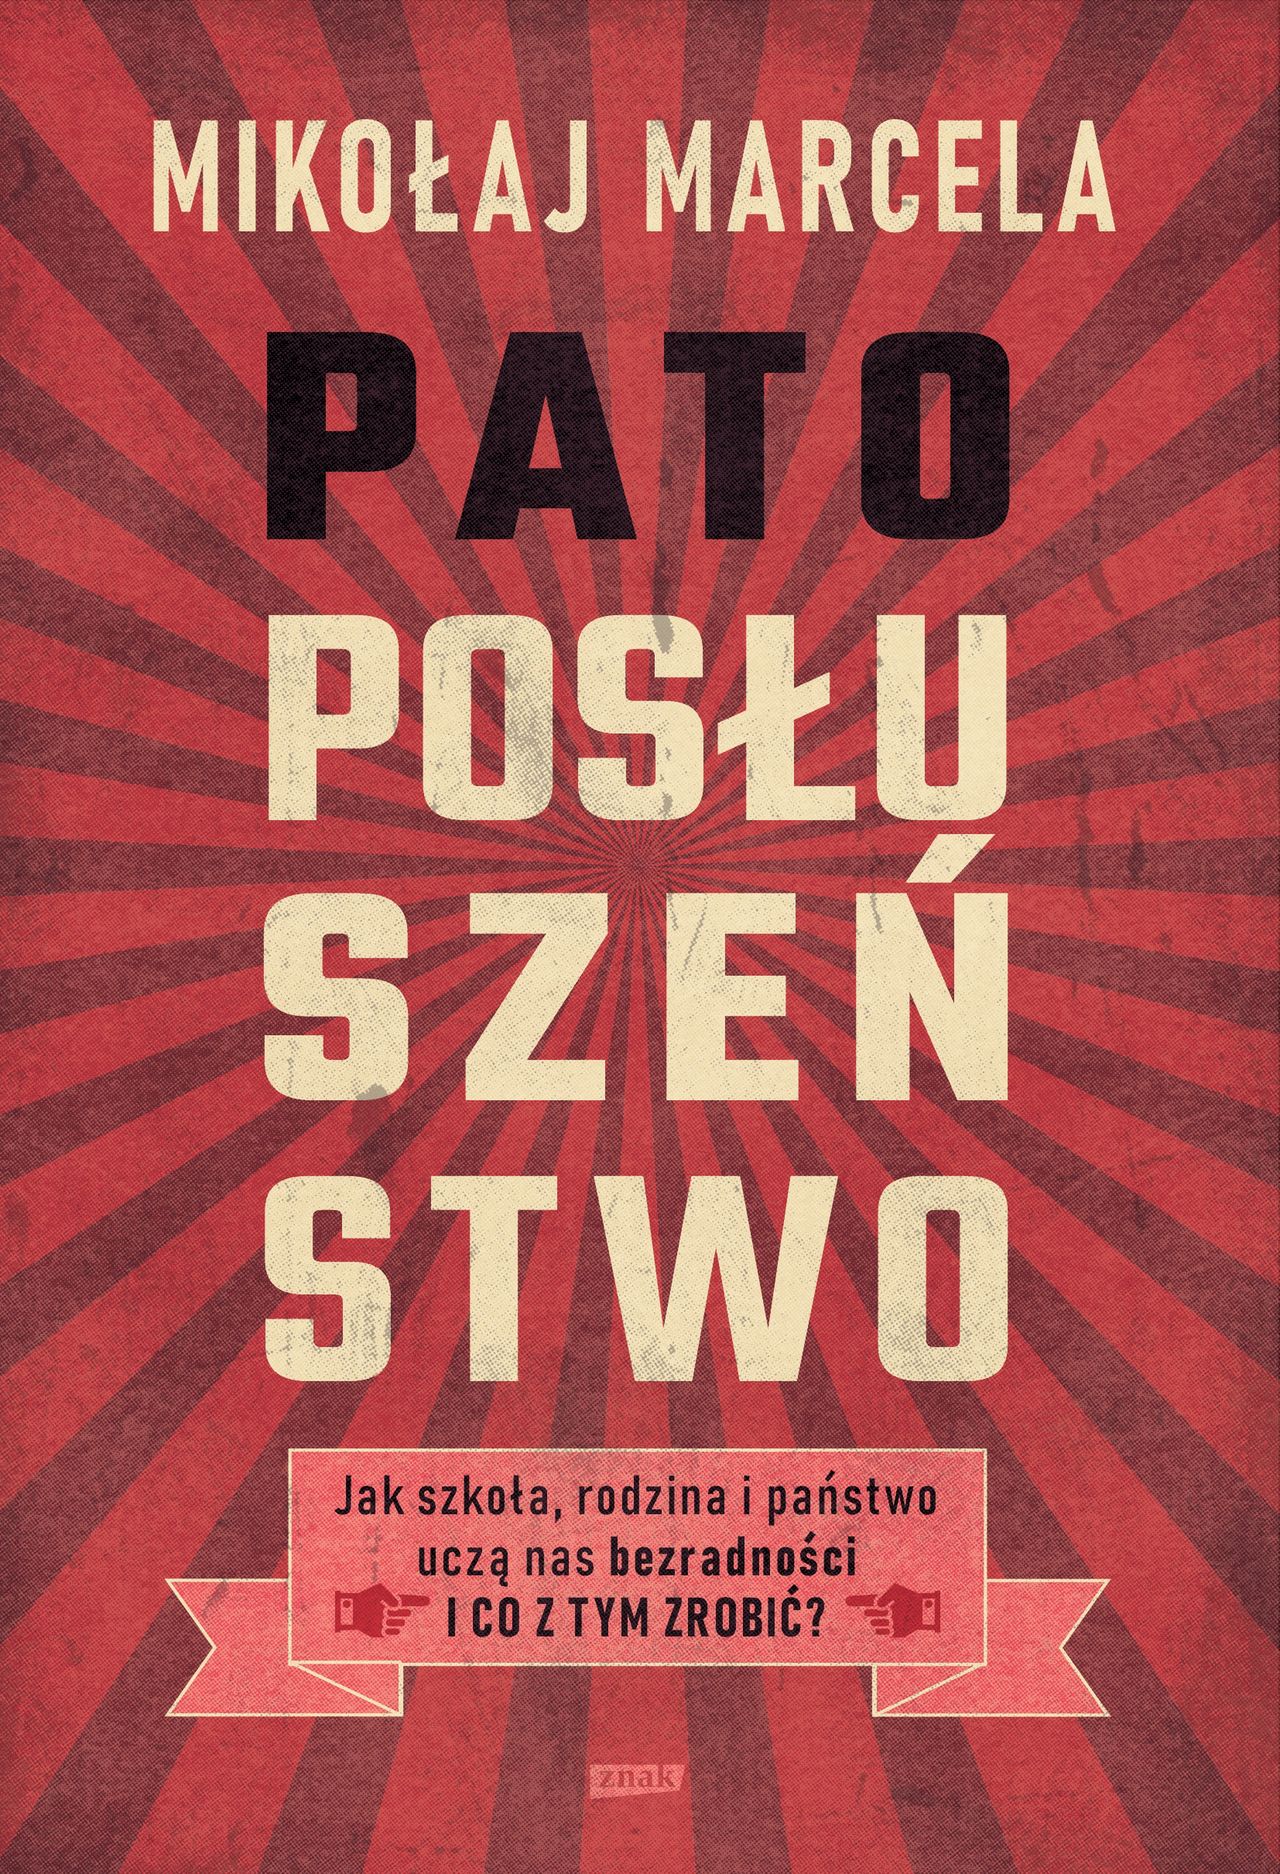 Okładka książki Mikołaja Marceli pt. "Patoposłuszeństwo"